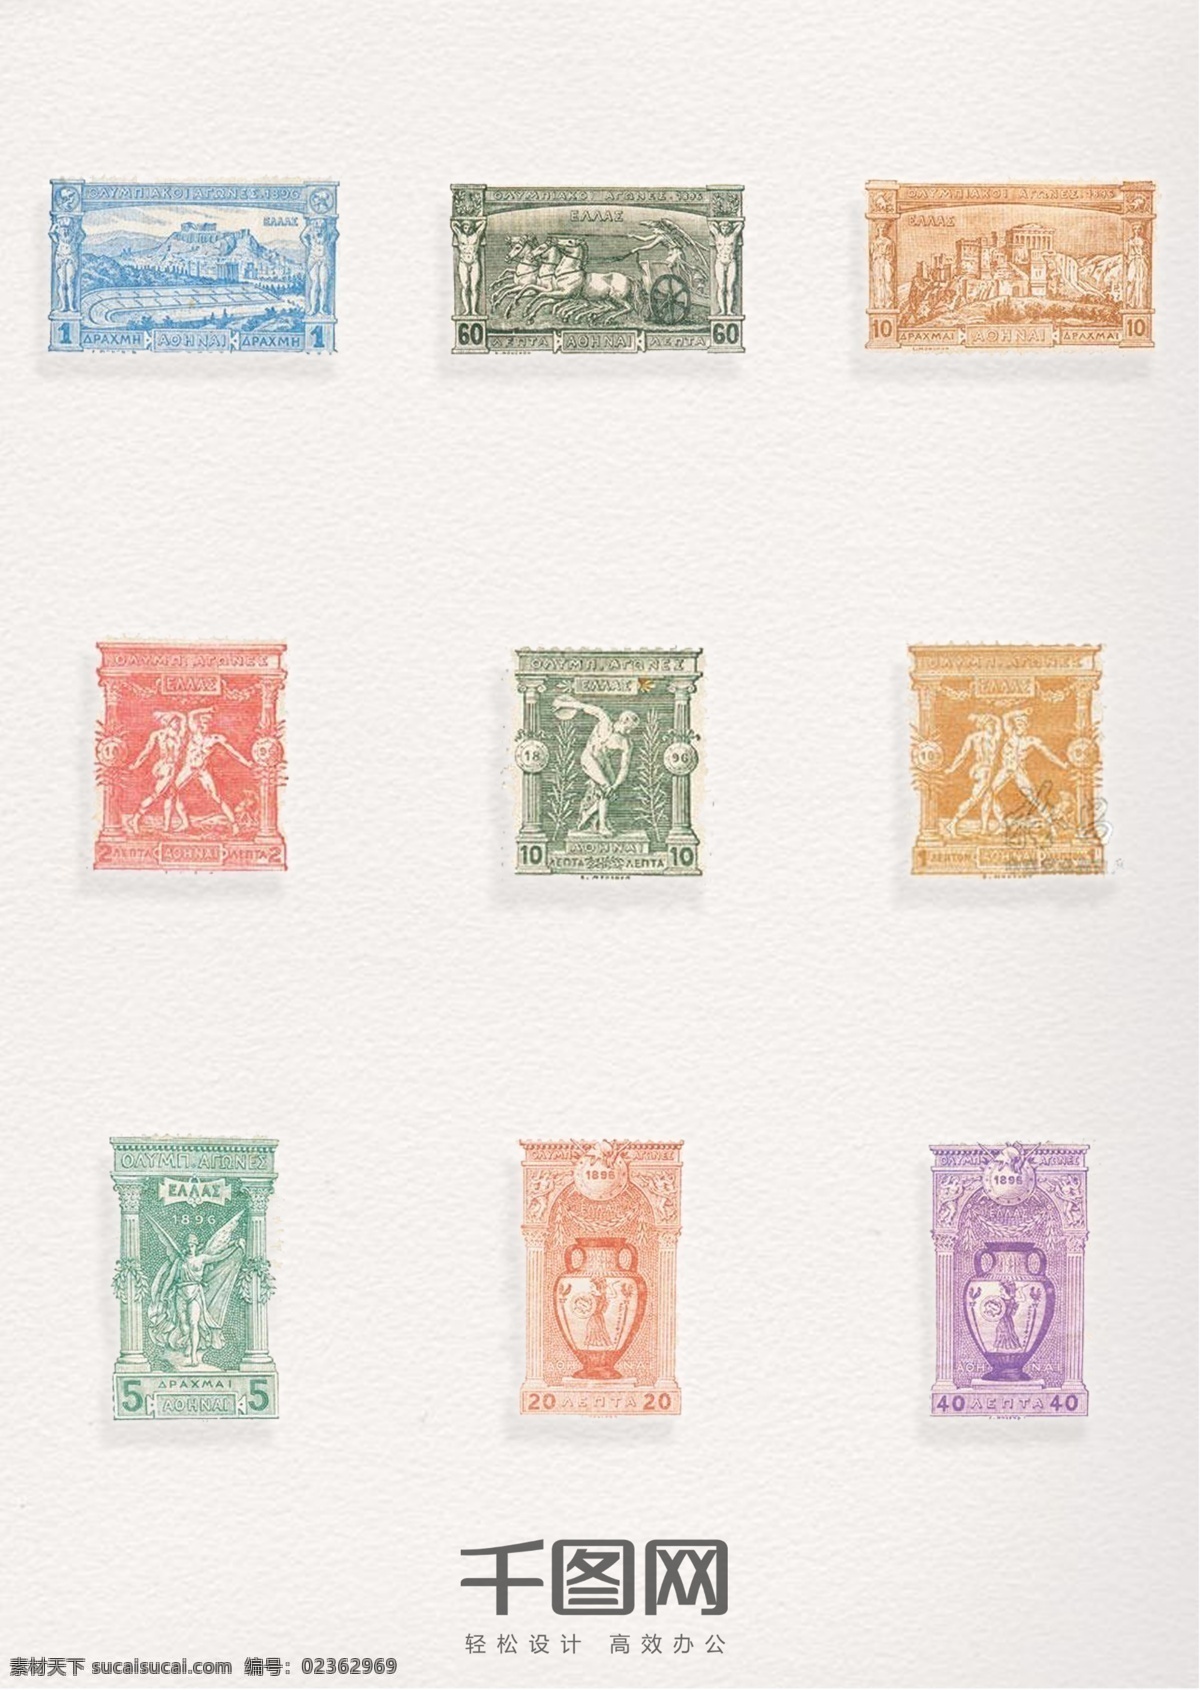 古希腊 奥运 邮票 元素 装饰 奥运邮票 奥运图案 邮票元素 邮票图案 邮票装饰元素 彩色邮票